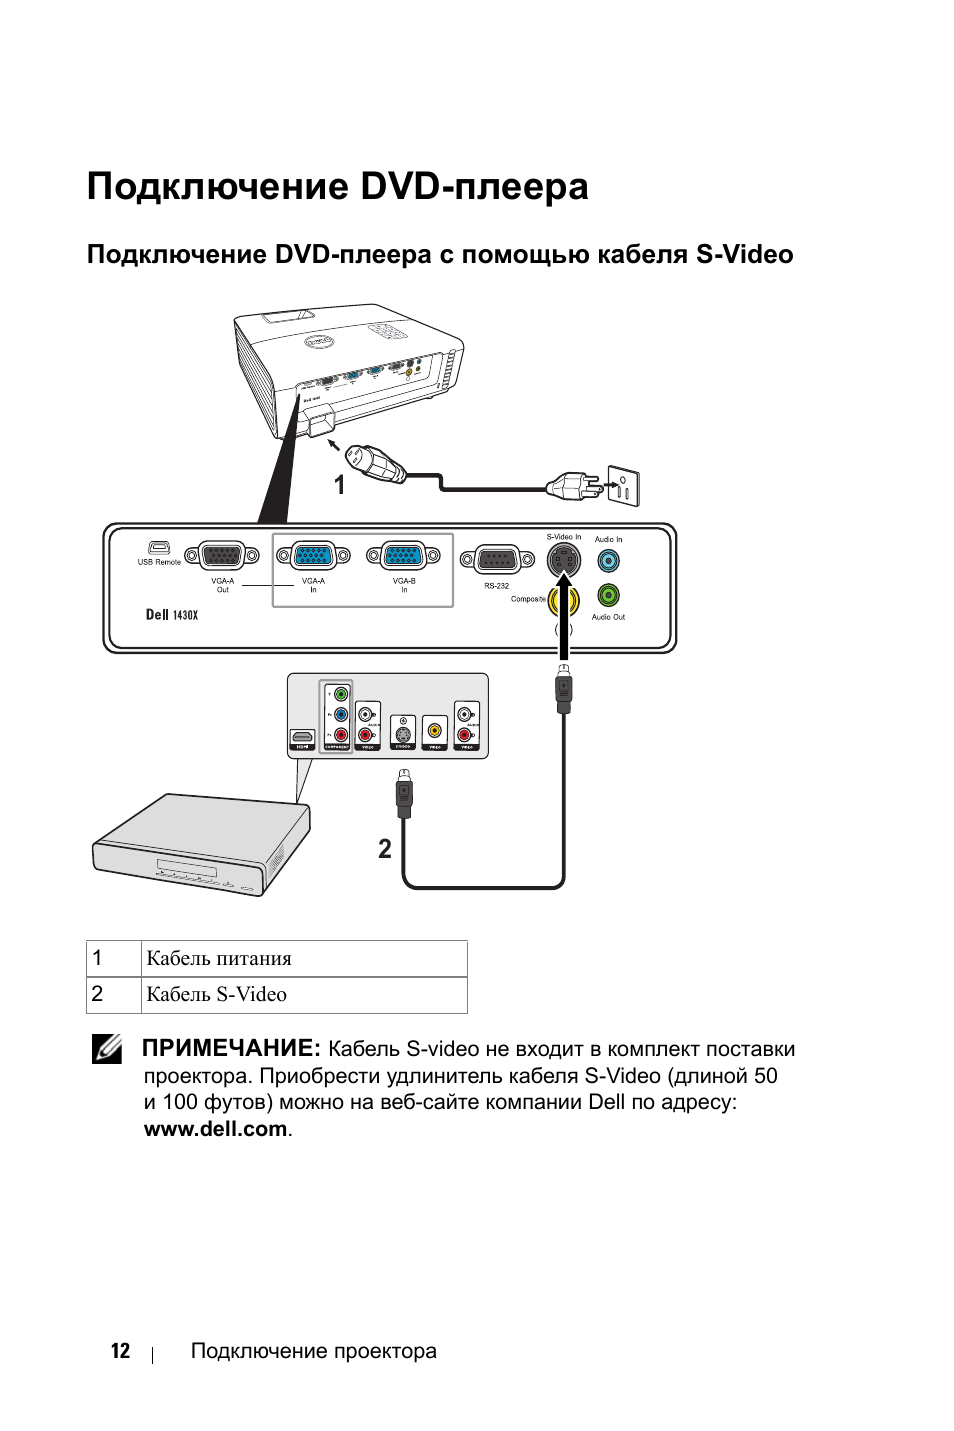 Как подключить видеомагнитофон к телевизору? подключение к современному жк-телевизору через «тюльпан»